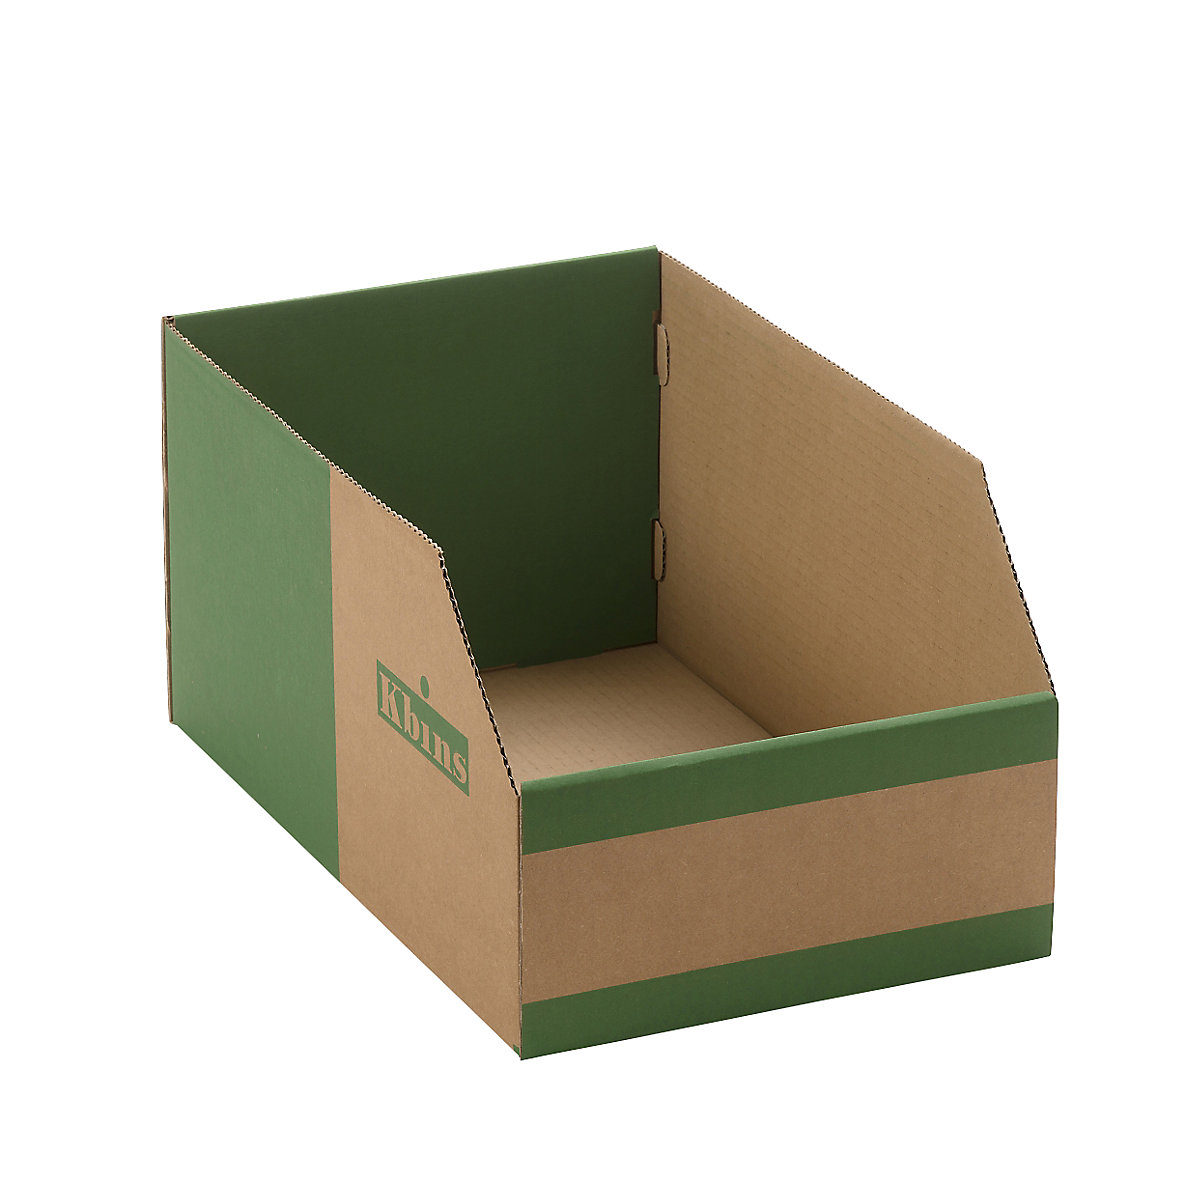 Karton állványdoboz, egyrétegű és összehajtható kivitel, cs. e. 25 db, h x szé x ma 400x250x200 mm-3